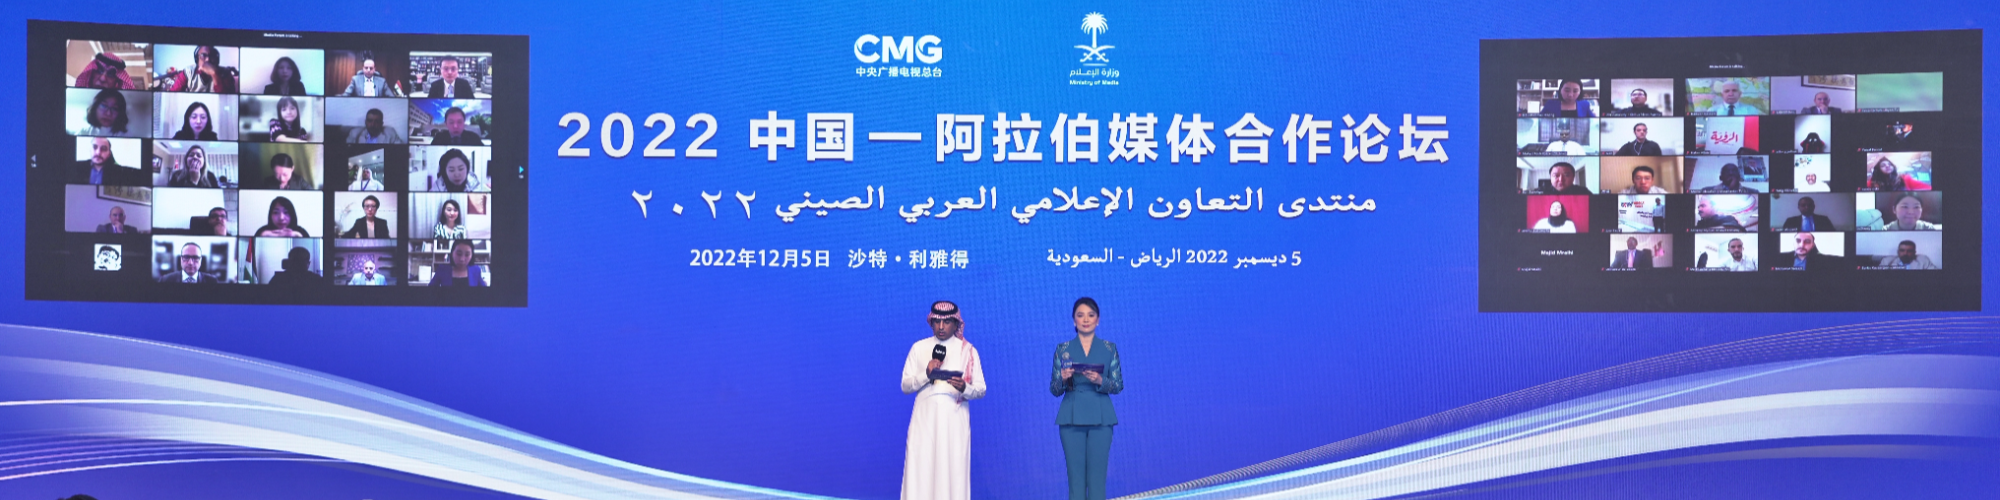  منتدى التعاون الاعلامي الصيني العربي ينتظم في الرياض والمدير العام  للاتحاد يتوجه بكلمة الى المنتدى 